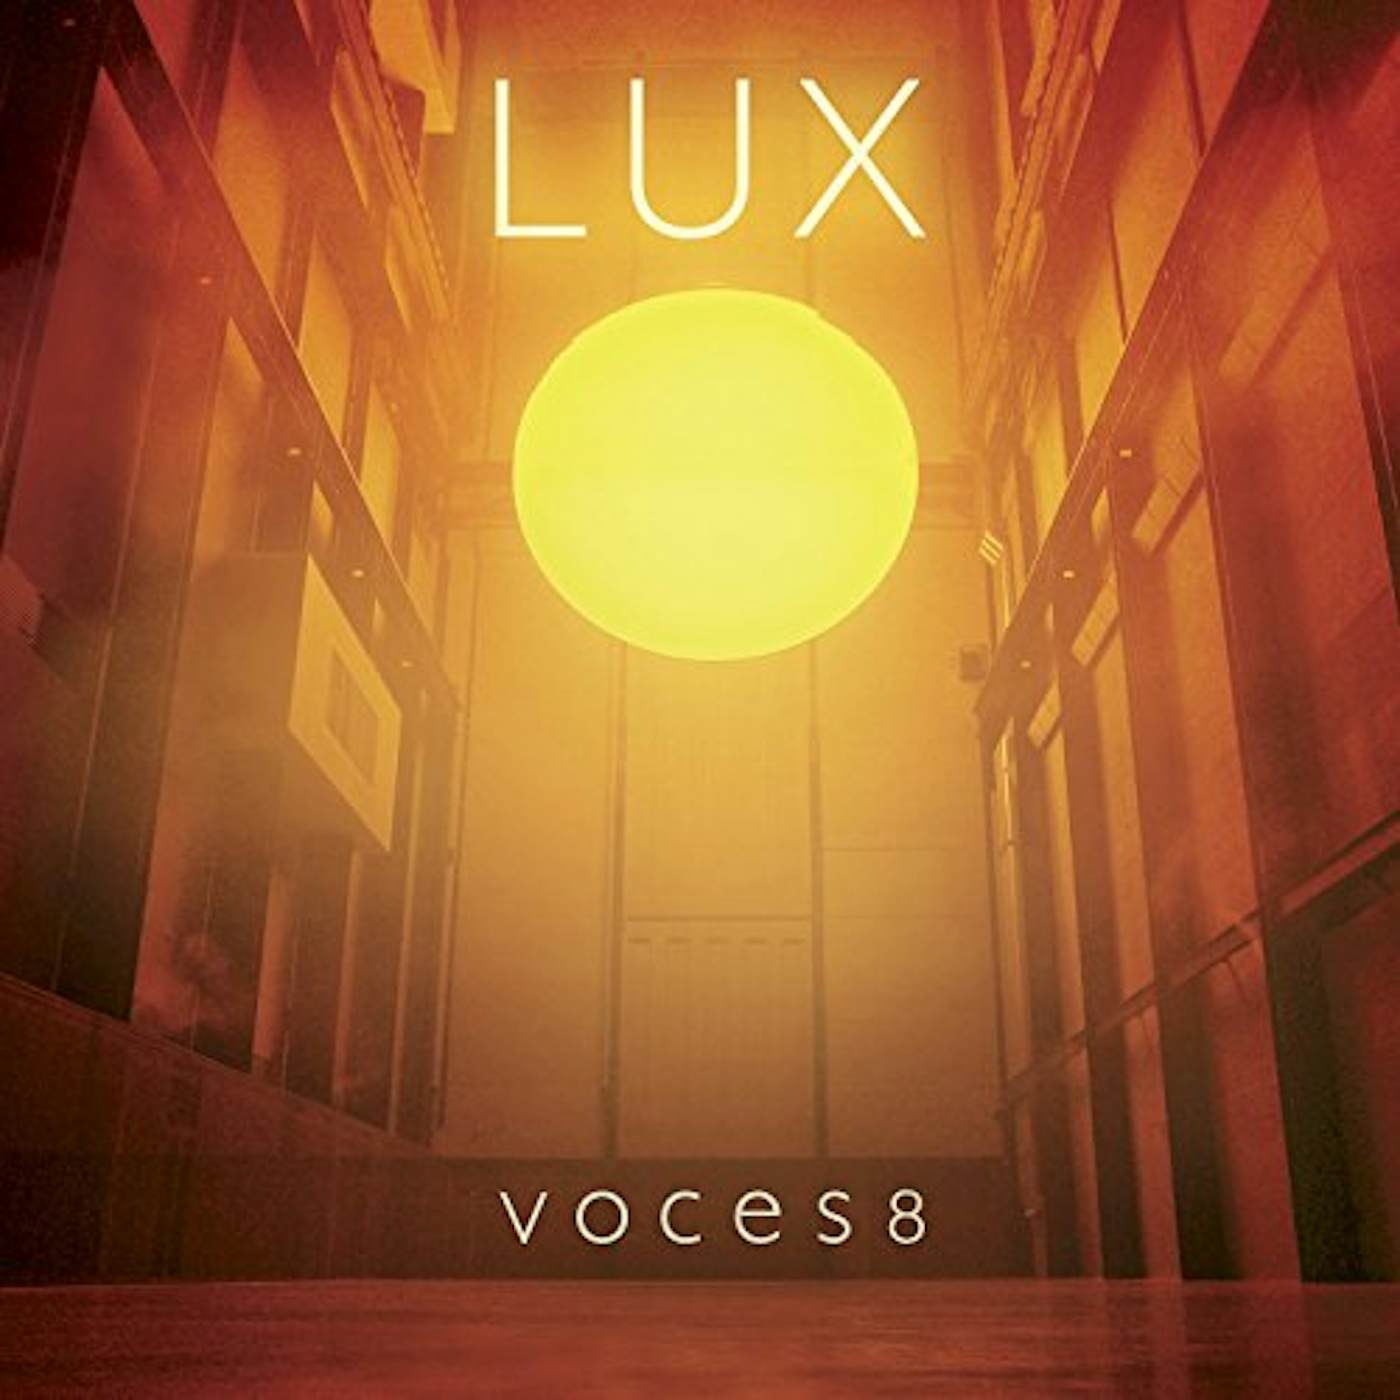 VOCES8 LUX CD